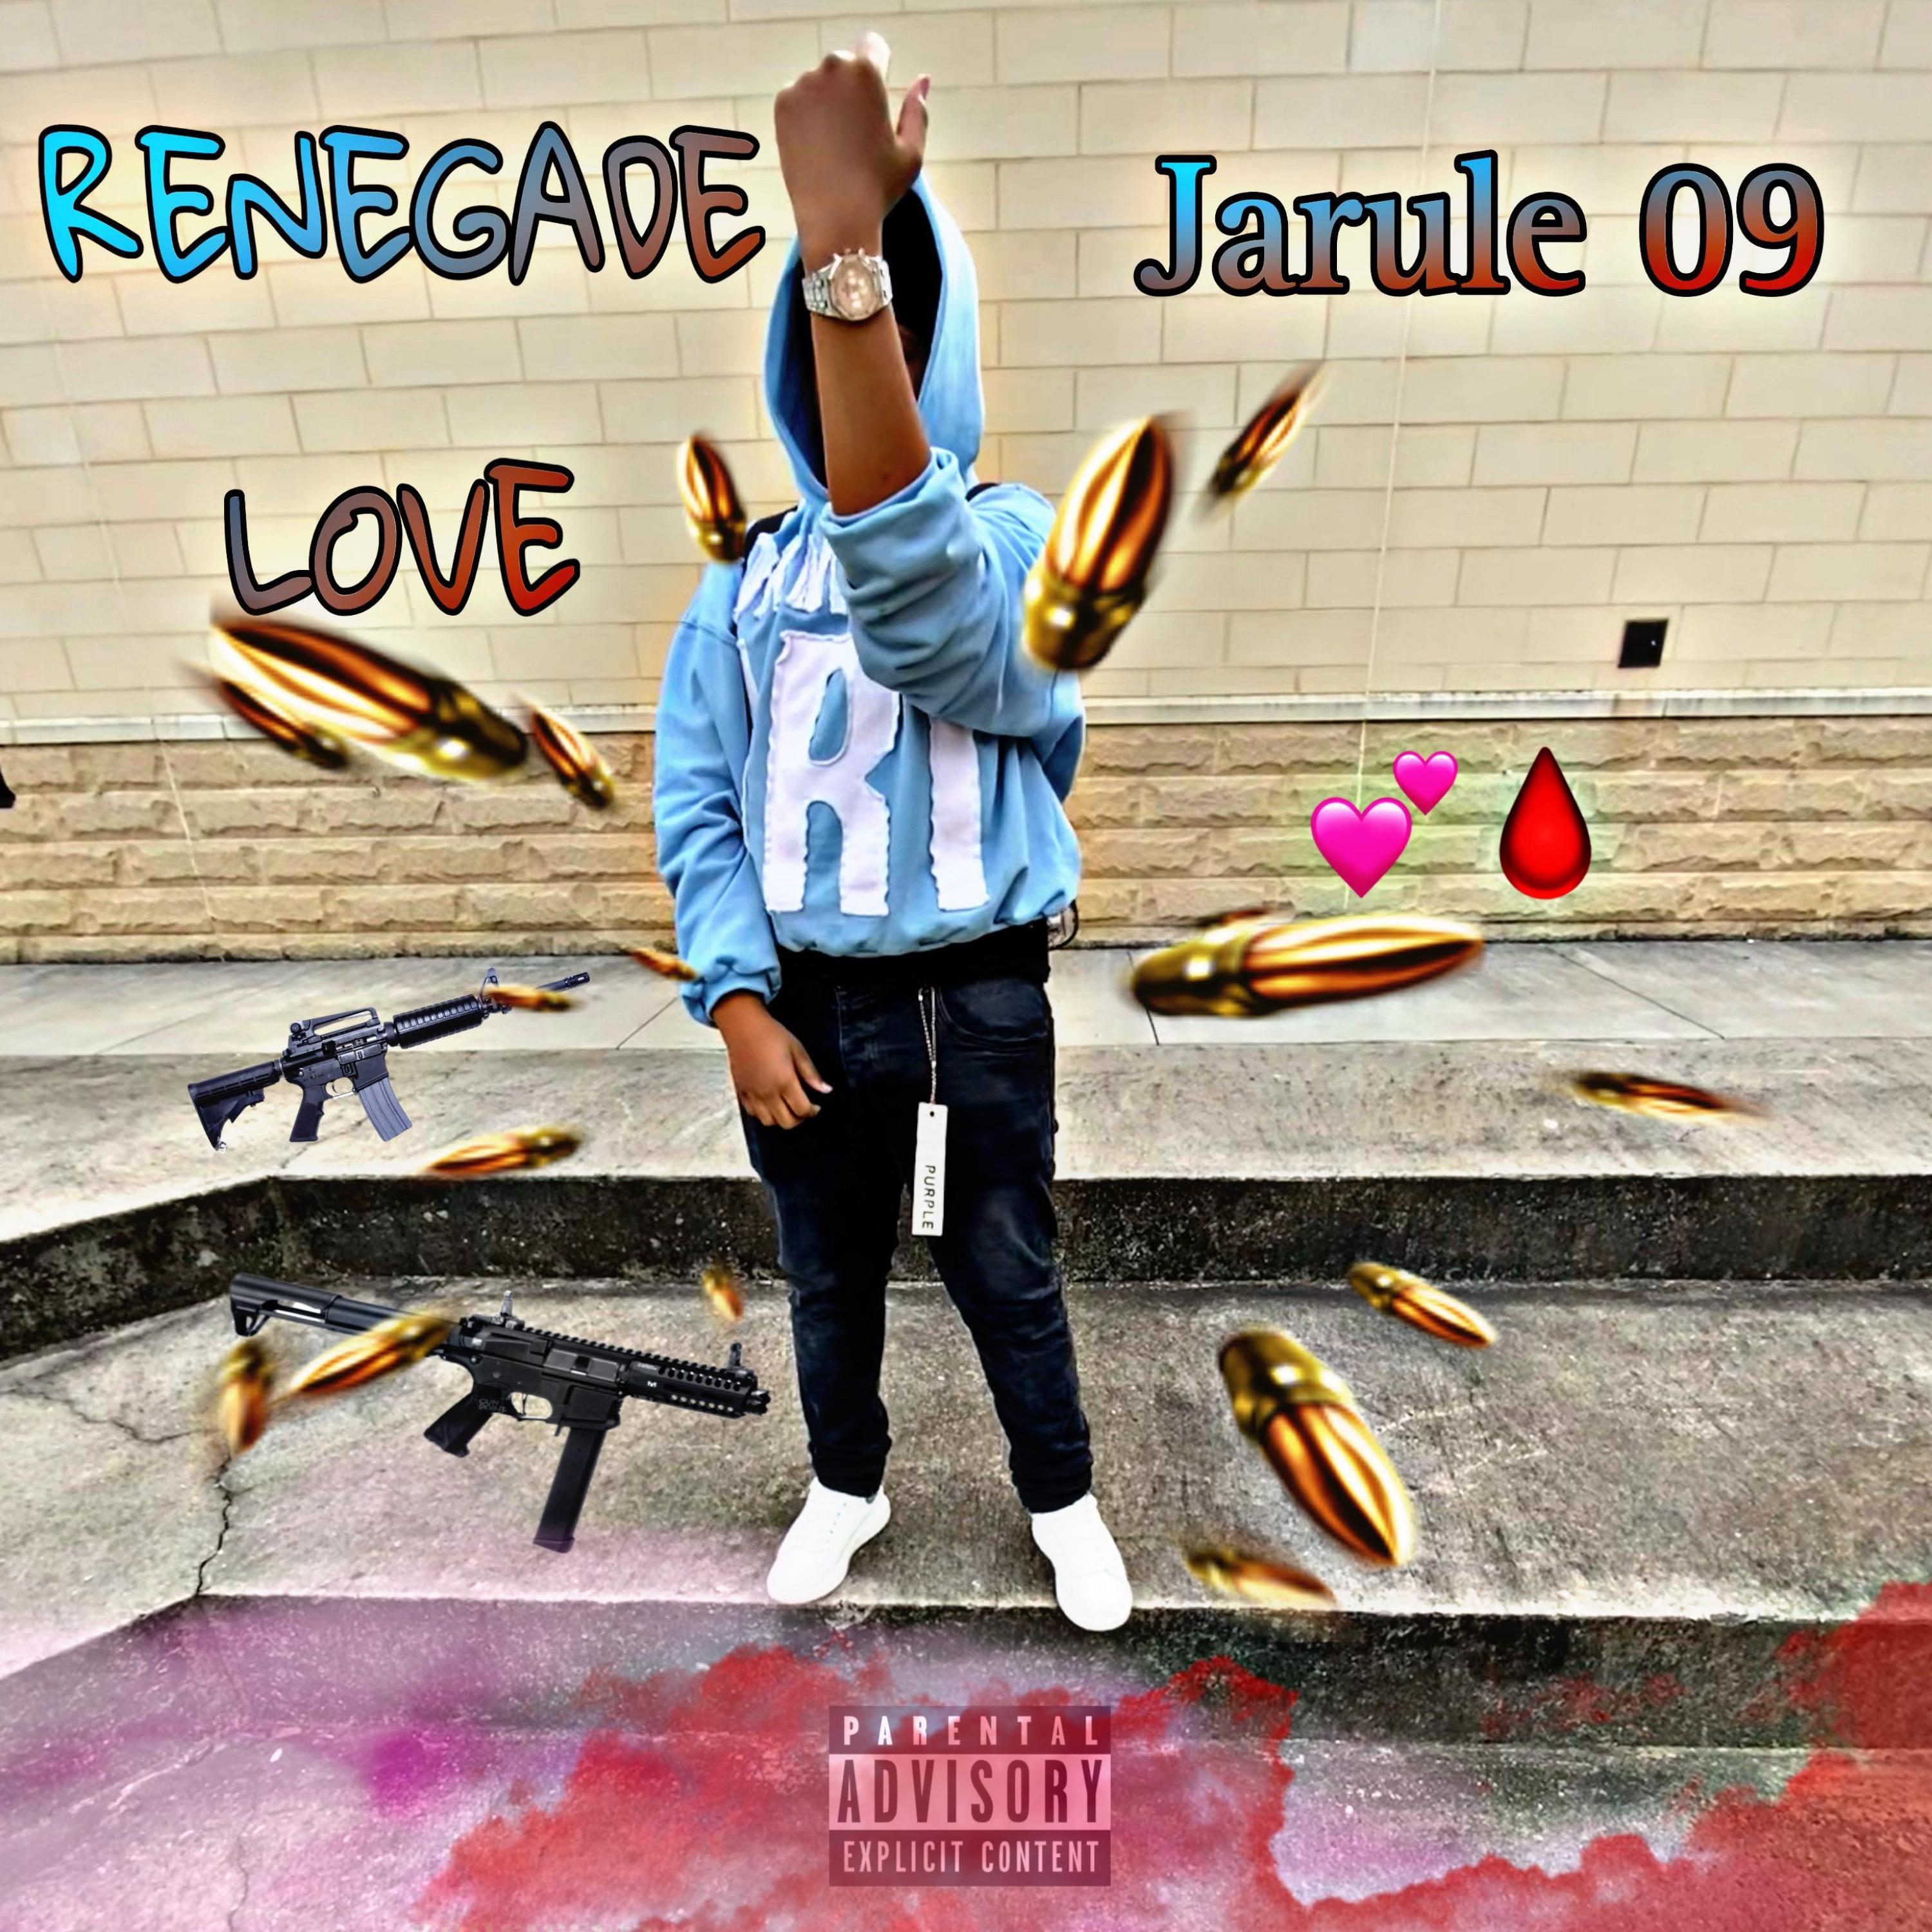 Jarule 09 - RENEGADE LOVE